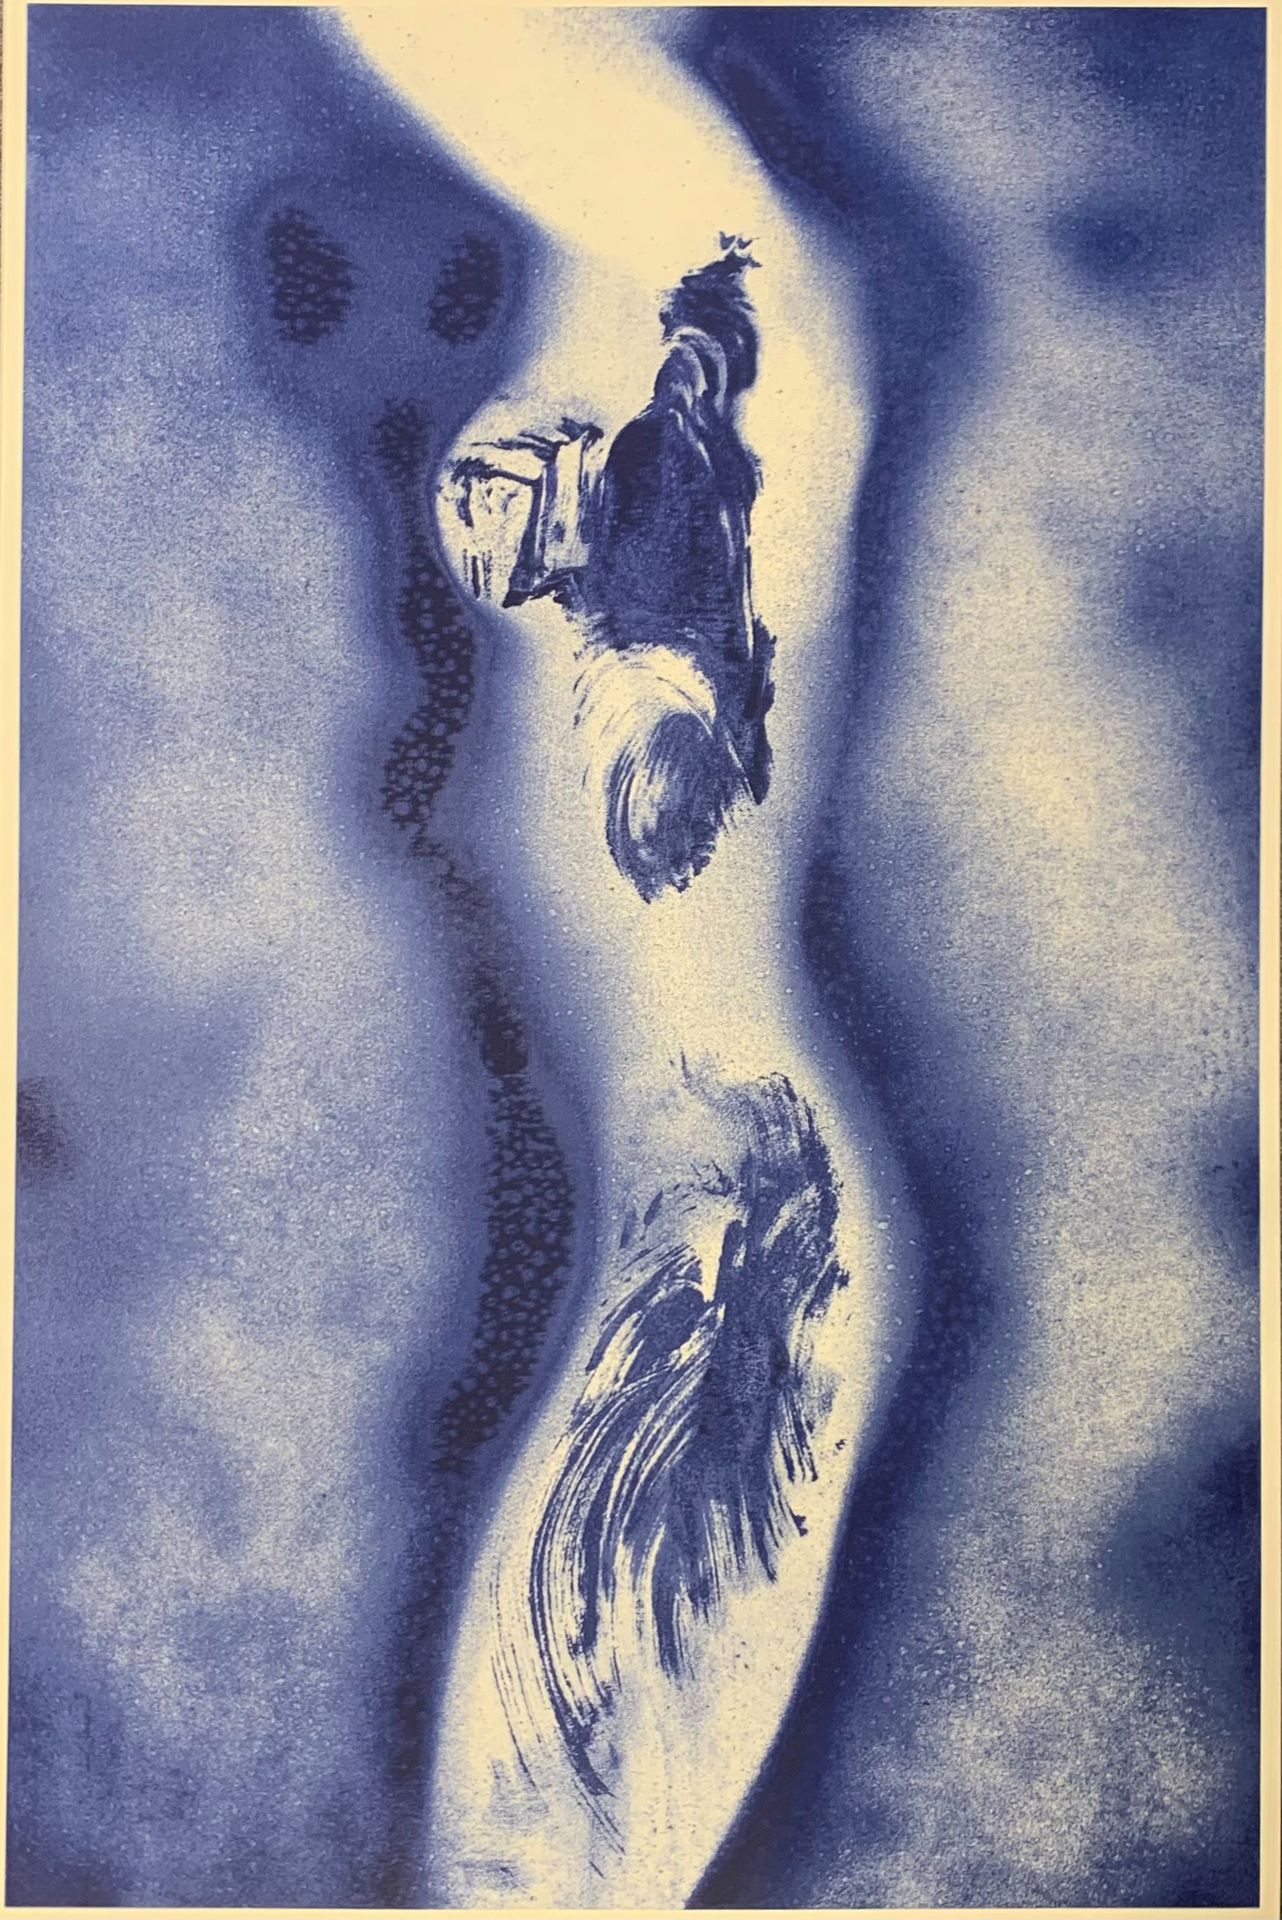 D'APRES YVES KLEIN (1928-1962) ANTHROPOMETRIE 148, 2005
Lithografie und Siebdruc&hellip;